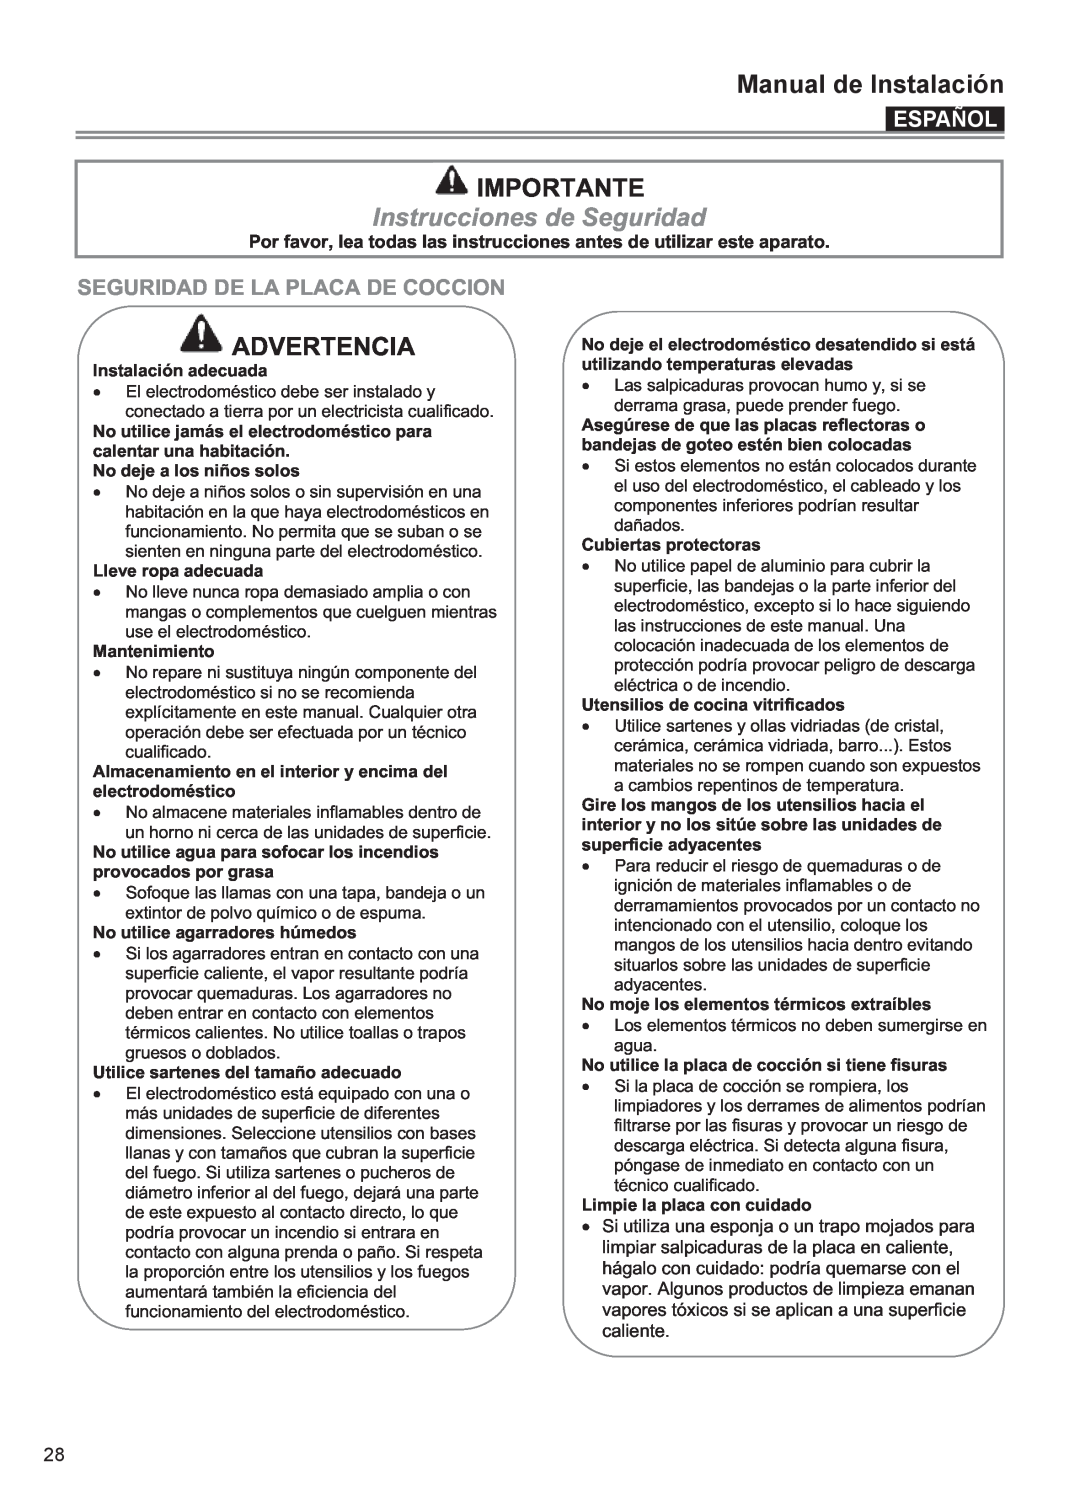 Bertazzoni P30 CER NE Manual deManualuso & Mantenimientode Instalación, Importante, Instrucciones de Seguridad, Español 